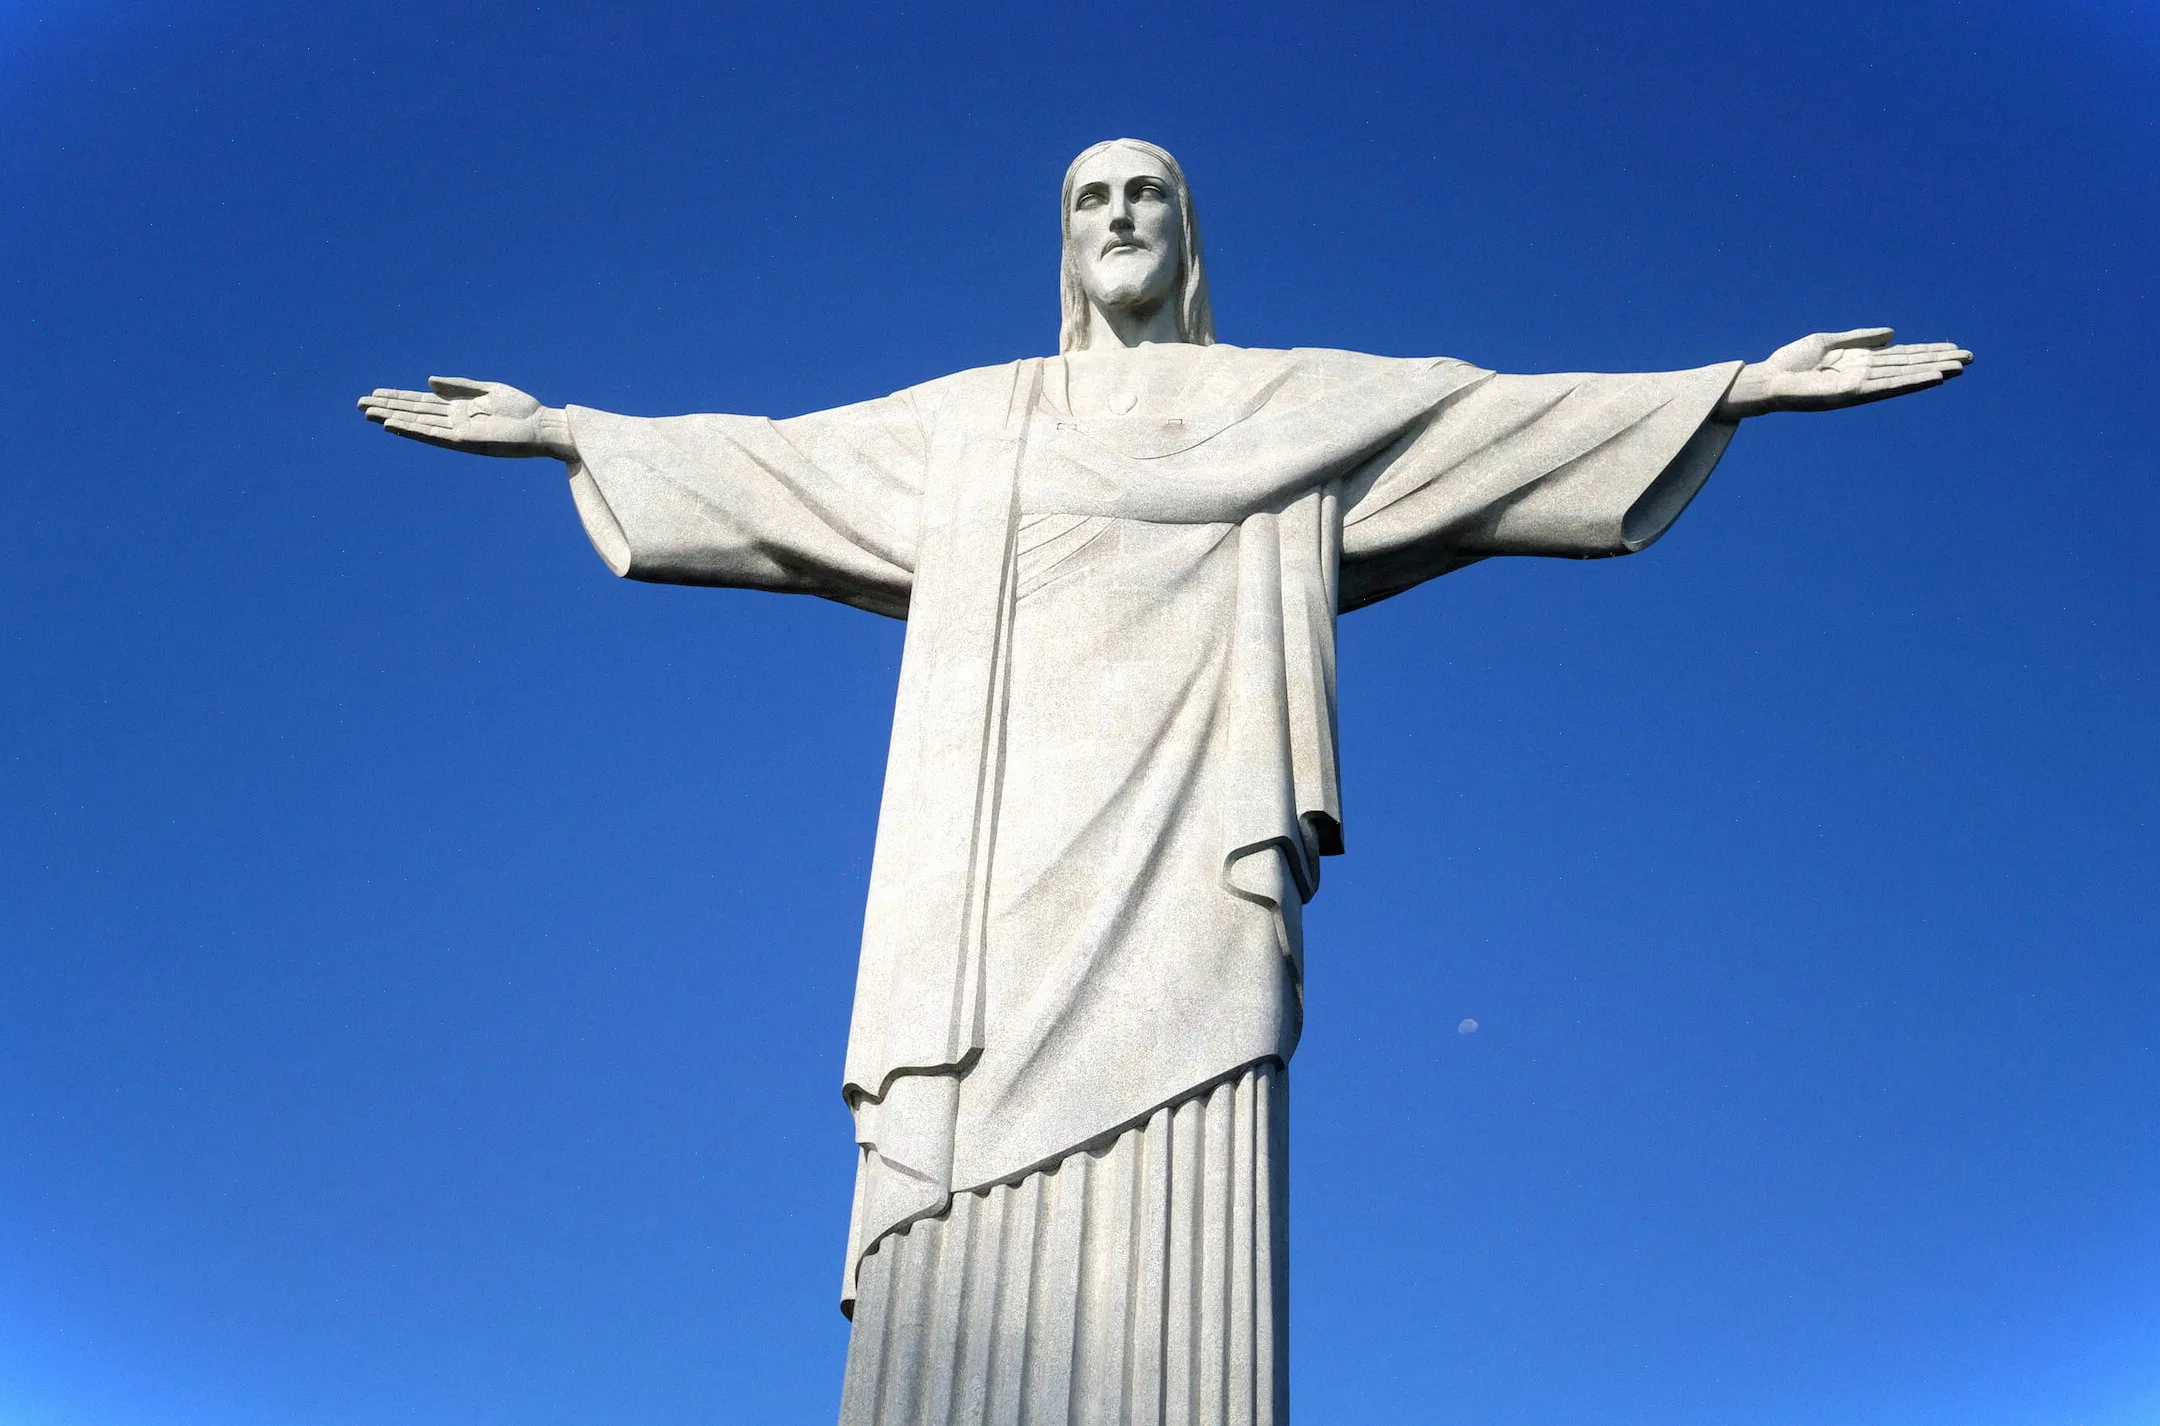 En Río de Janeiro, esto es imprescindible, la estatua es increíble y también hay una vista increíble de la ciudad.